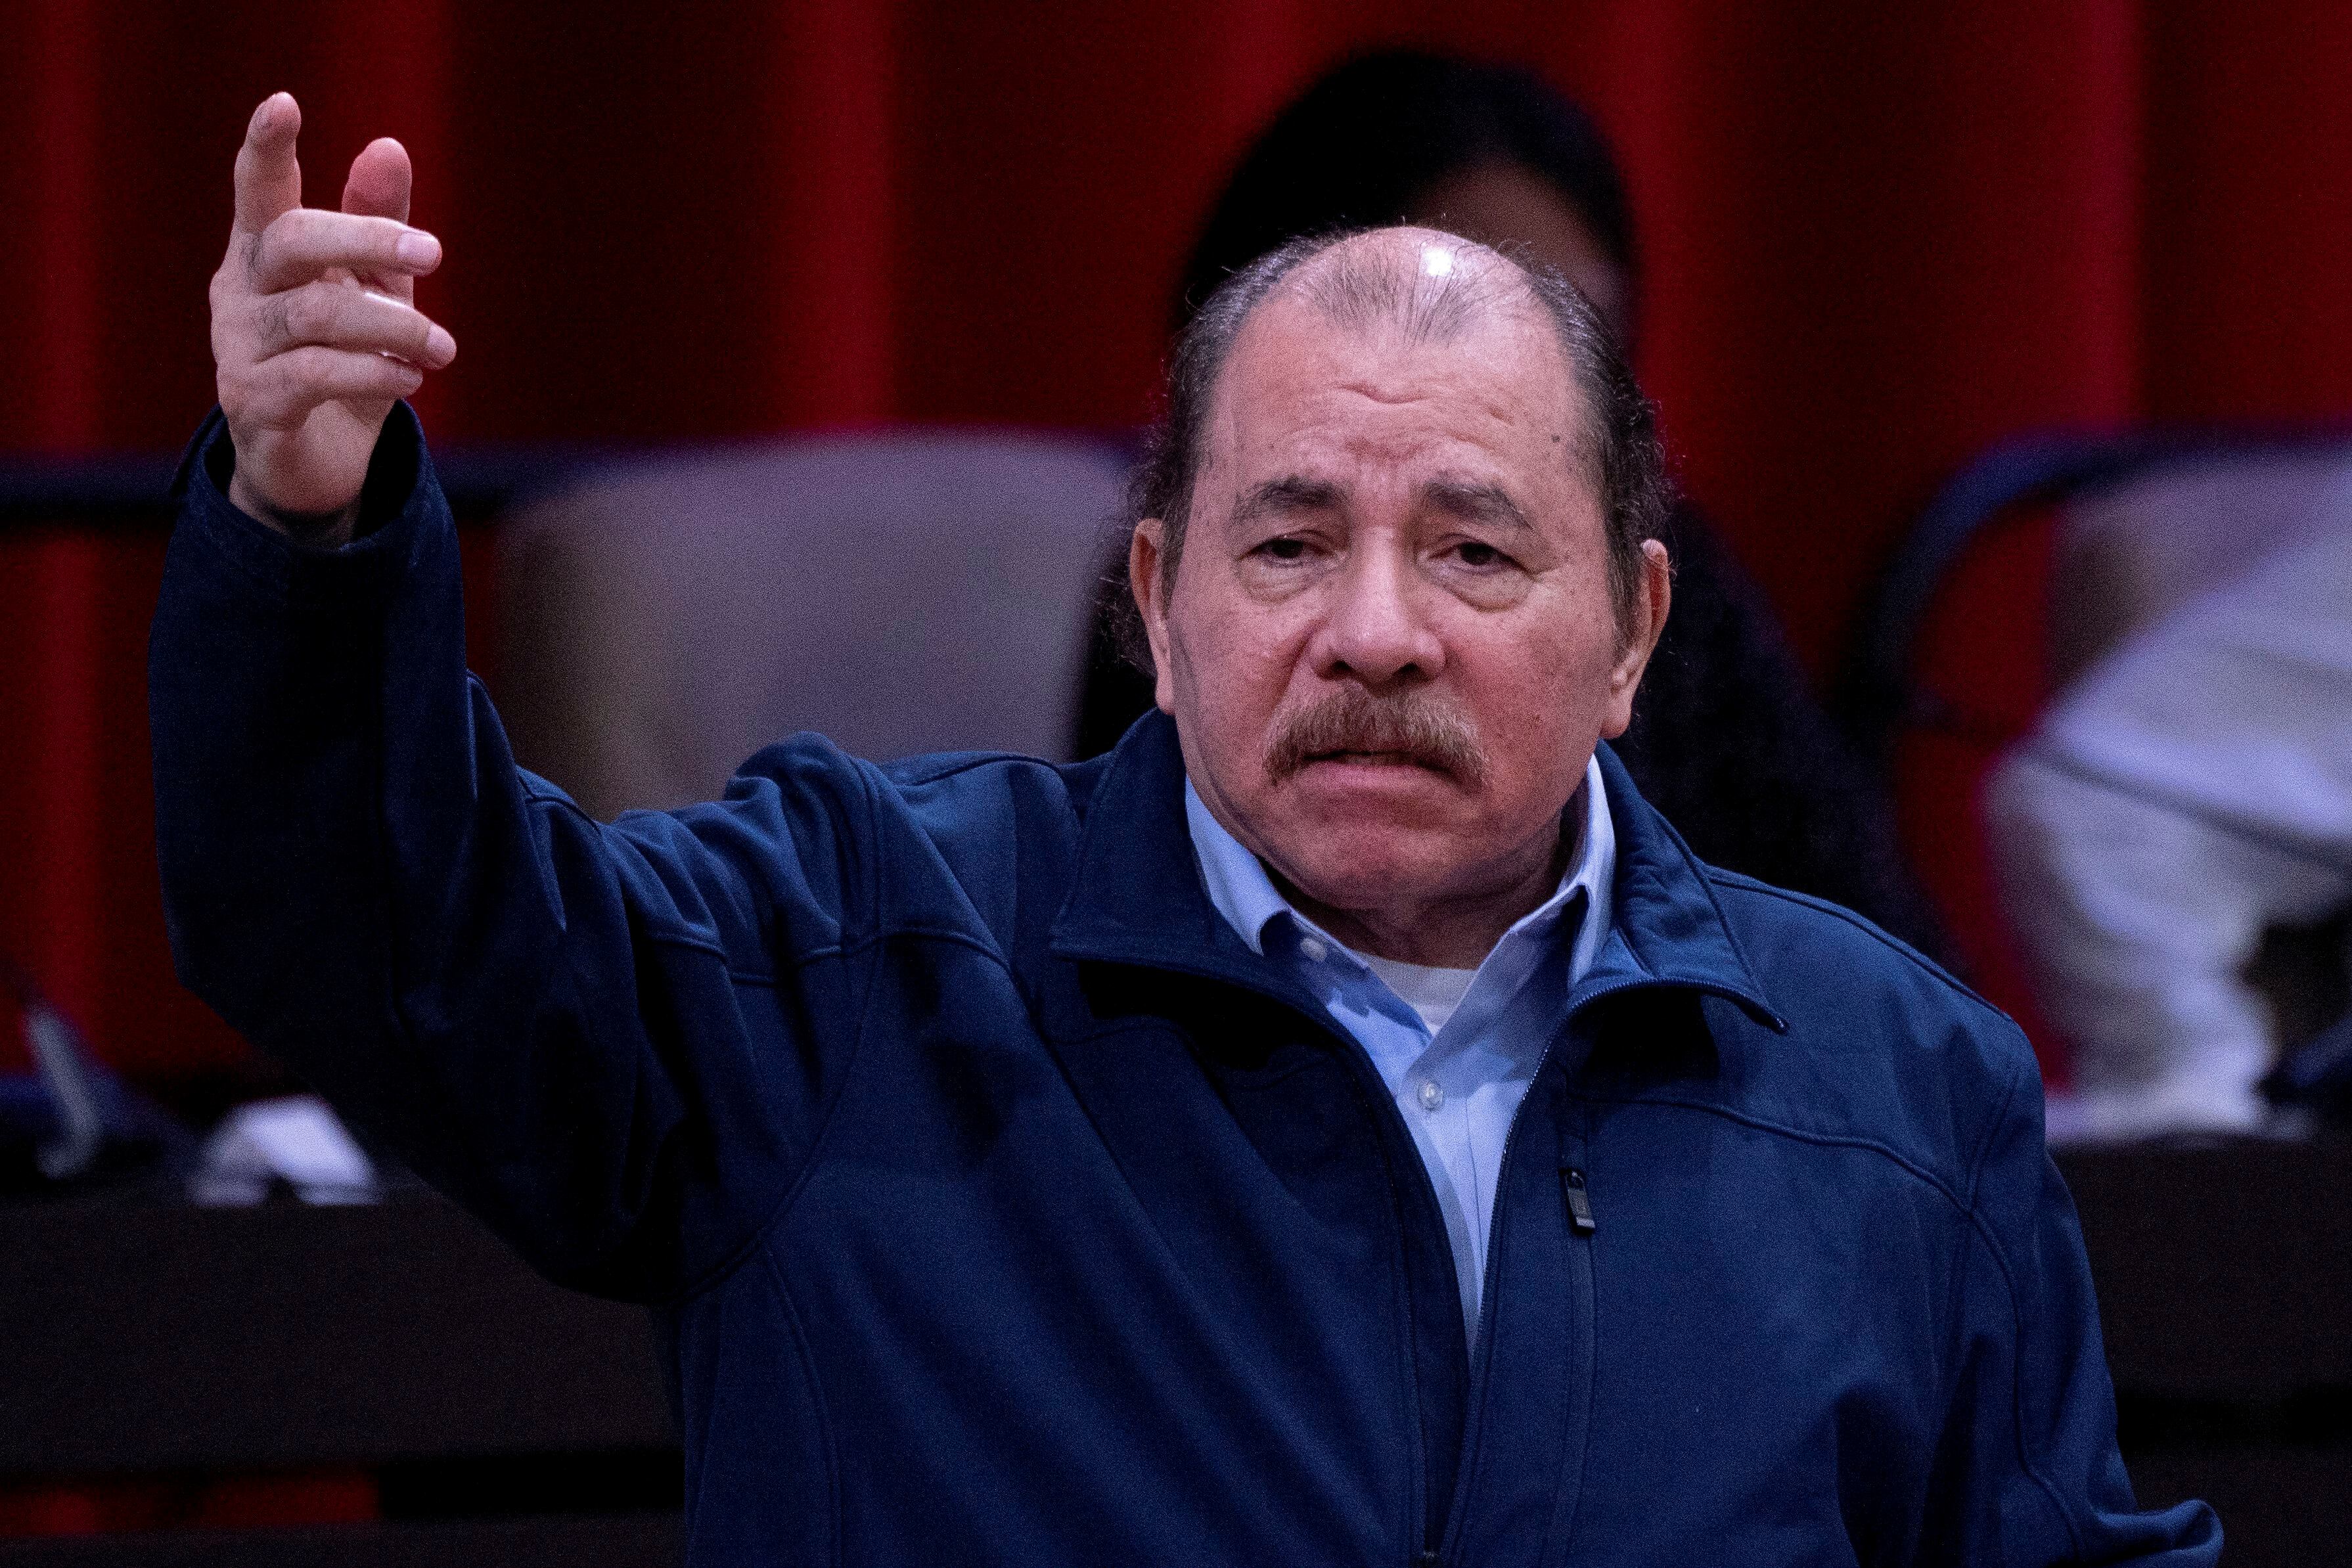 El presidente de Nicaragua, Daniel Ortega, pronuncia un discurso durante la sesión extraordinaria de la Asamblea Nacional del Poder Popular de Cuba en conmemoración del 18 aniversario de la creación del ALBA-TCP en el Palacio de las Convenciones de La Habana, el 14 de diciembre de 2022.